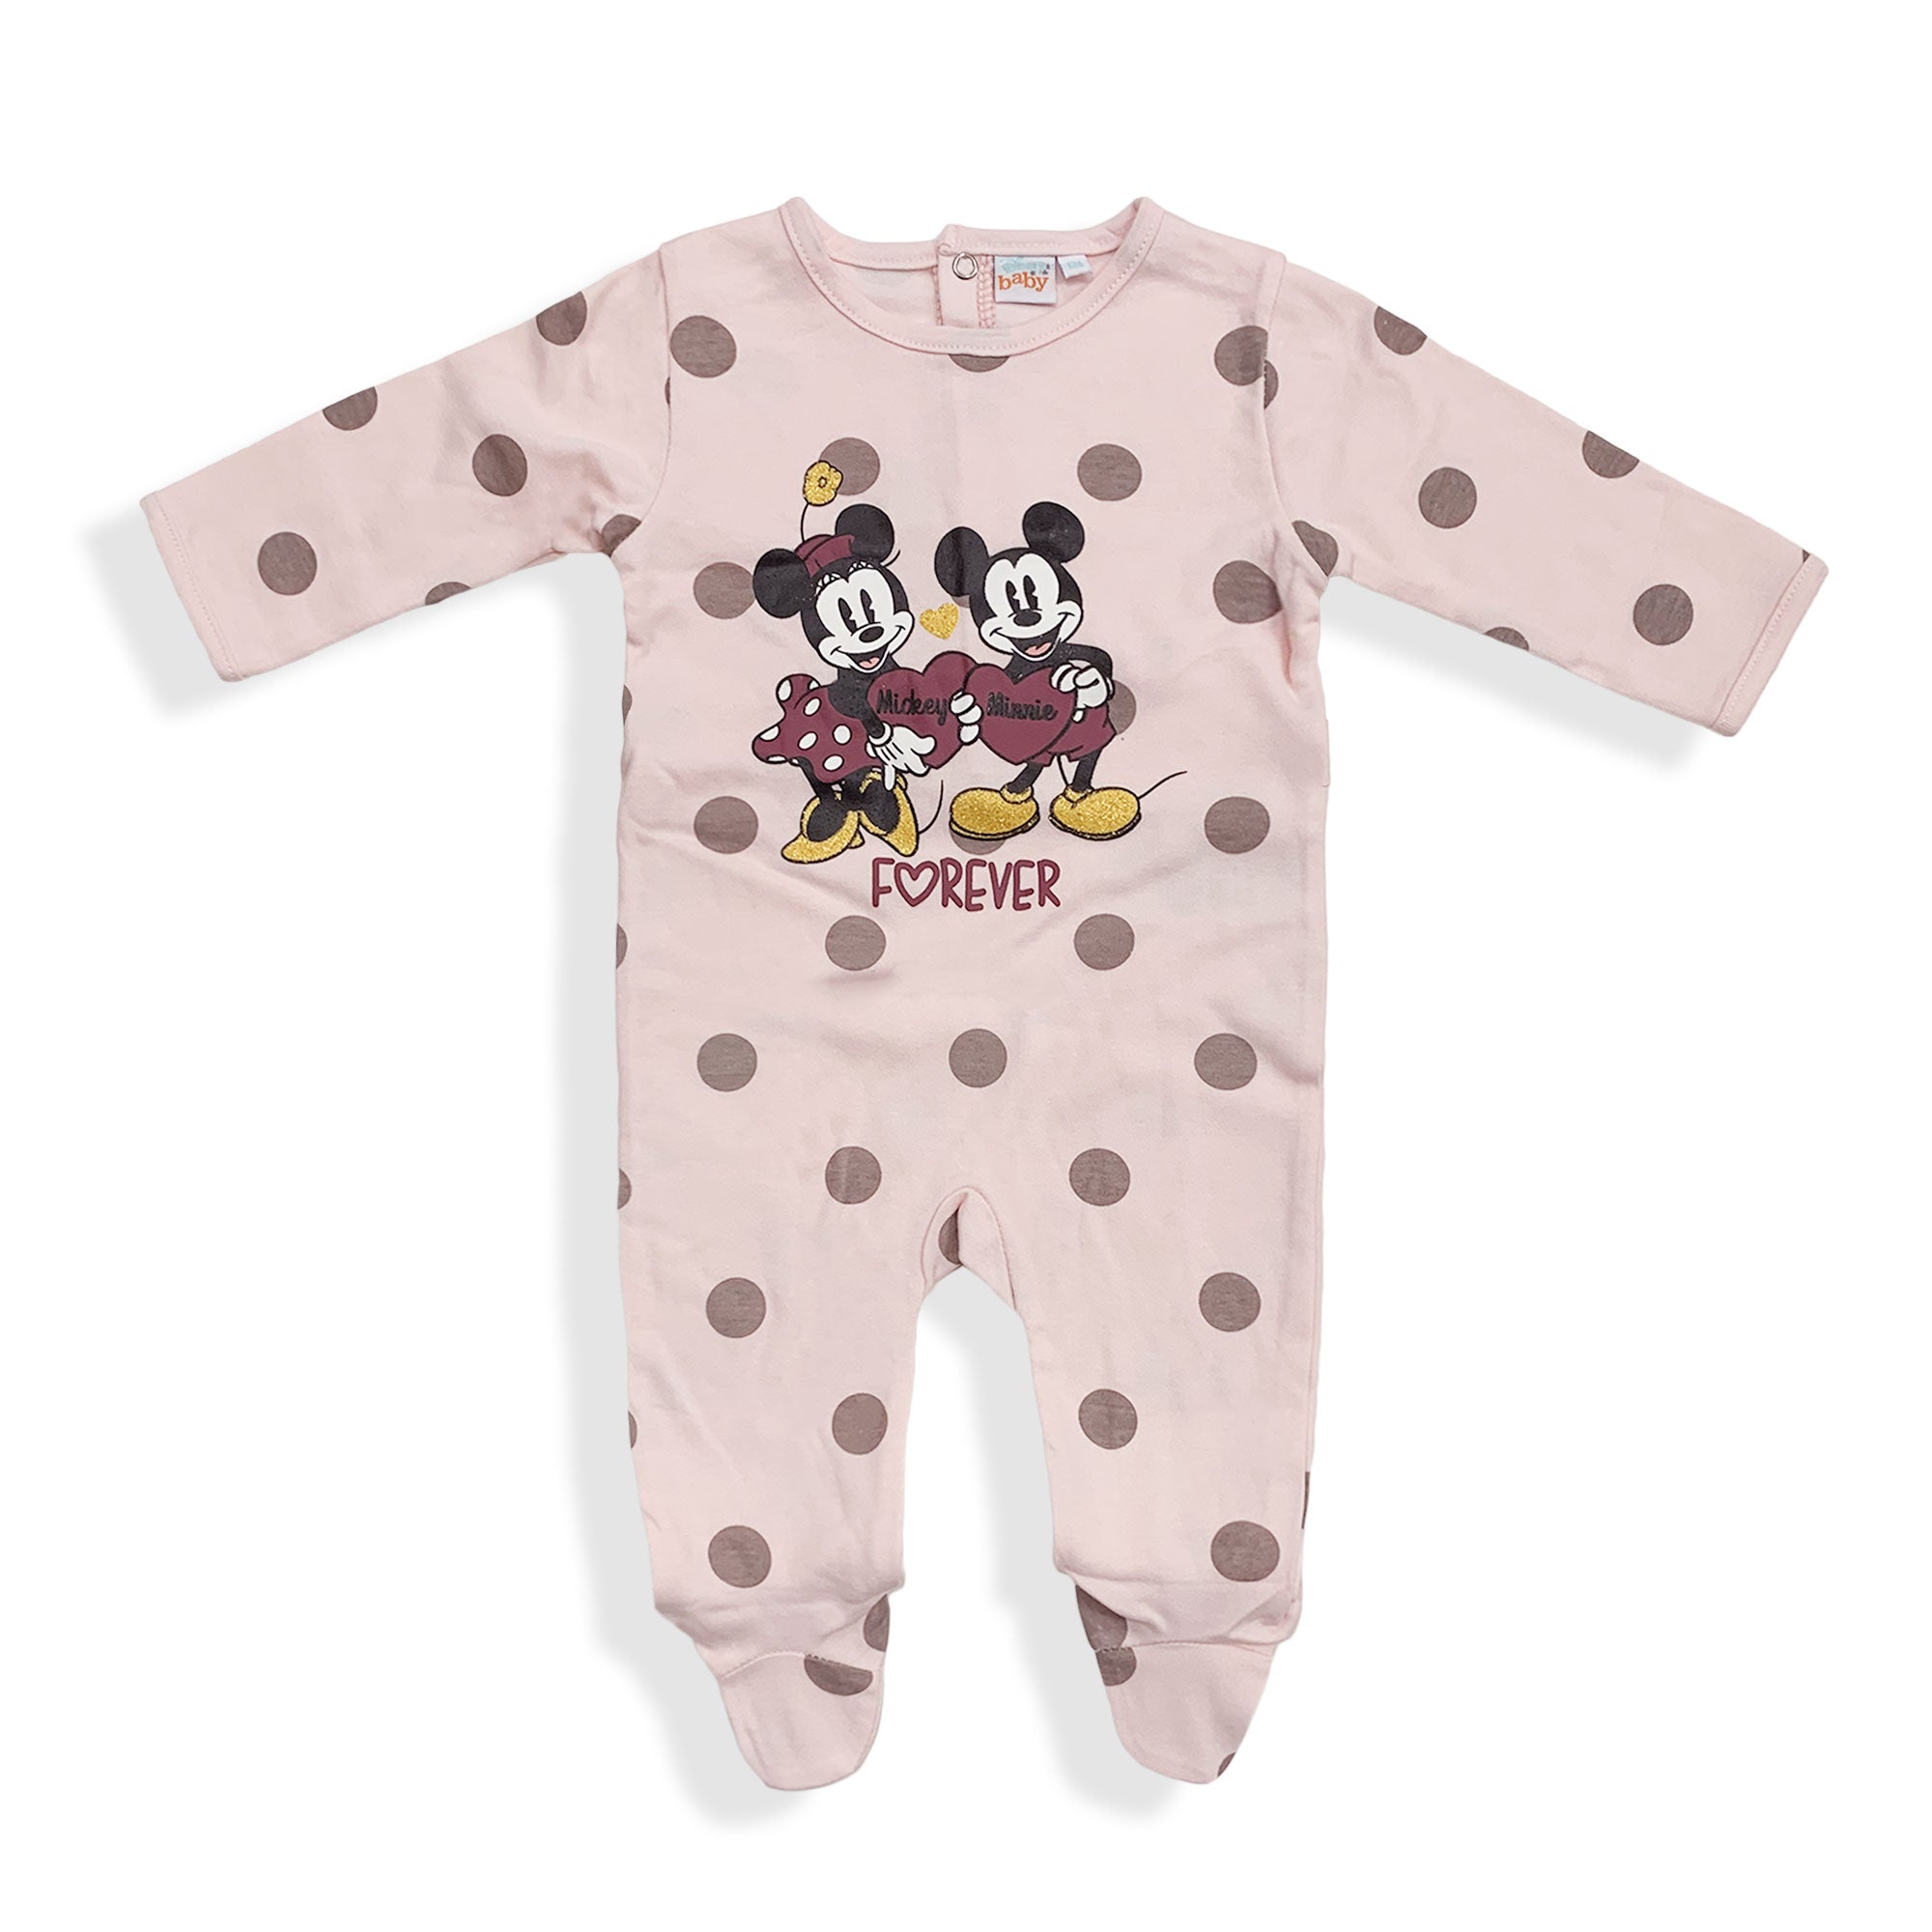 Tutina Disney Pagliaccetto neonato Minnie Mouse Pigiama caldo cotone bimba 5935